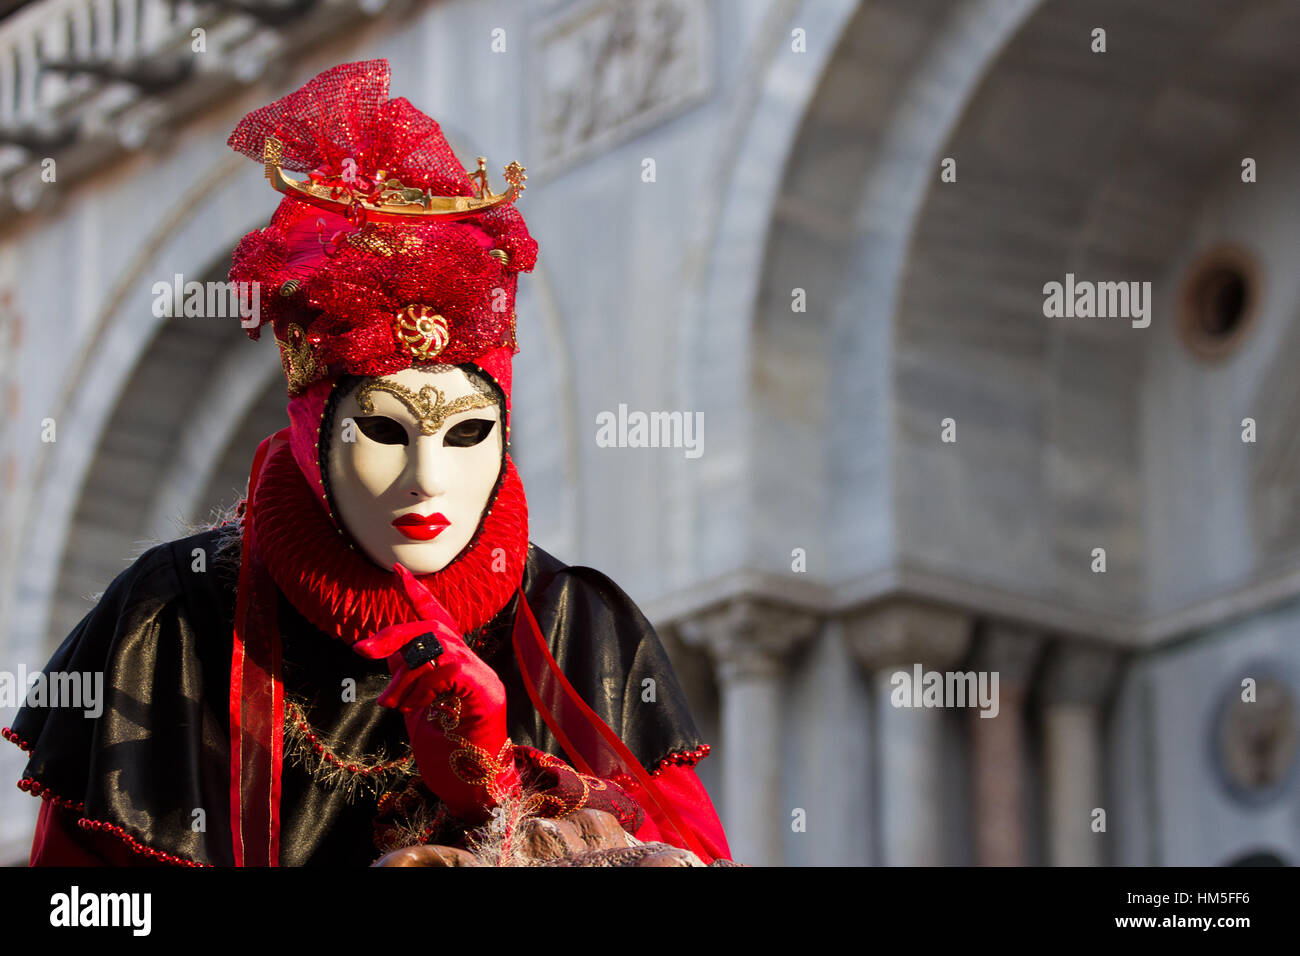 Venise - 6 février : personne en costume sur la Piazza San Marco au cours de Carnaval de Venise, le 6 février 2013, à Venise, Italie. Cette année, le carnaval était h Banque D'Images